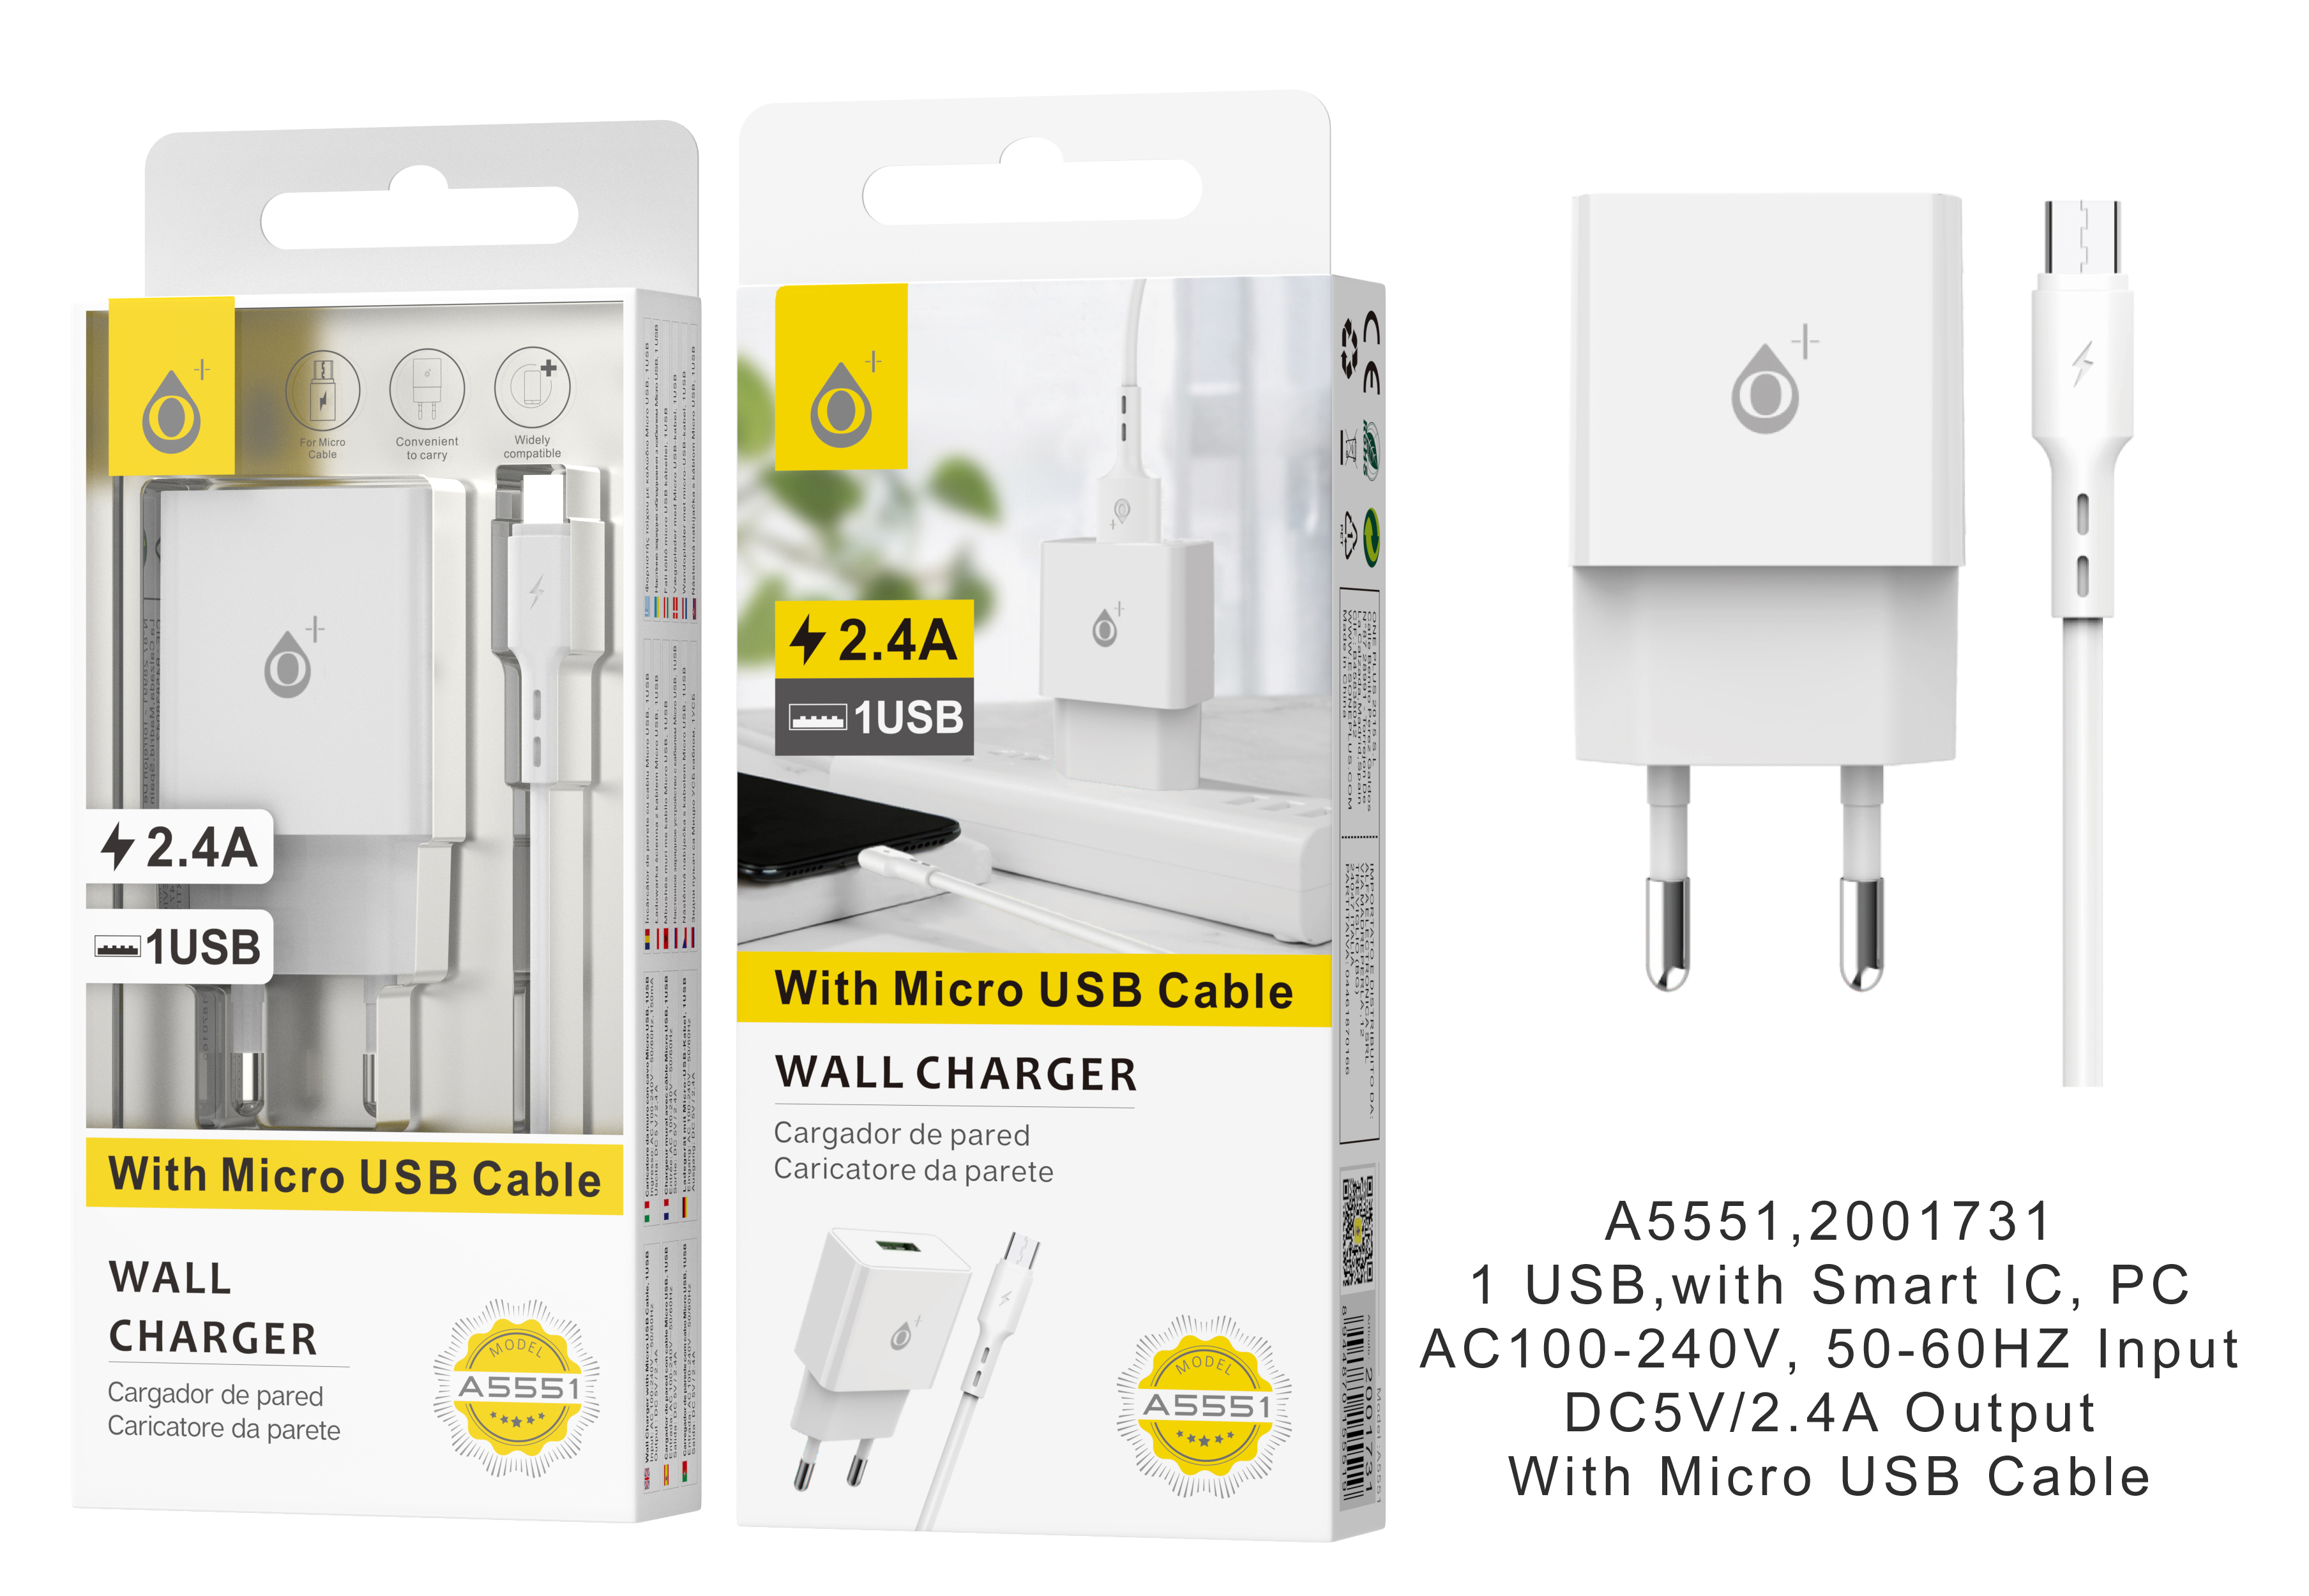 A5551 BL Cargador de Red Jaspe con cable para Micro USB , 2.4A 5V , Blanco